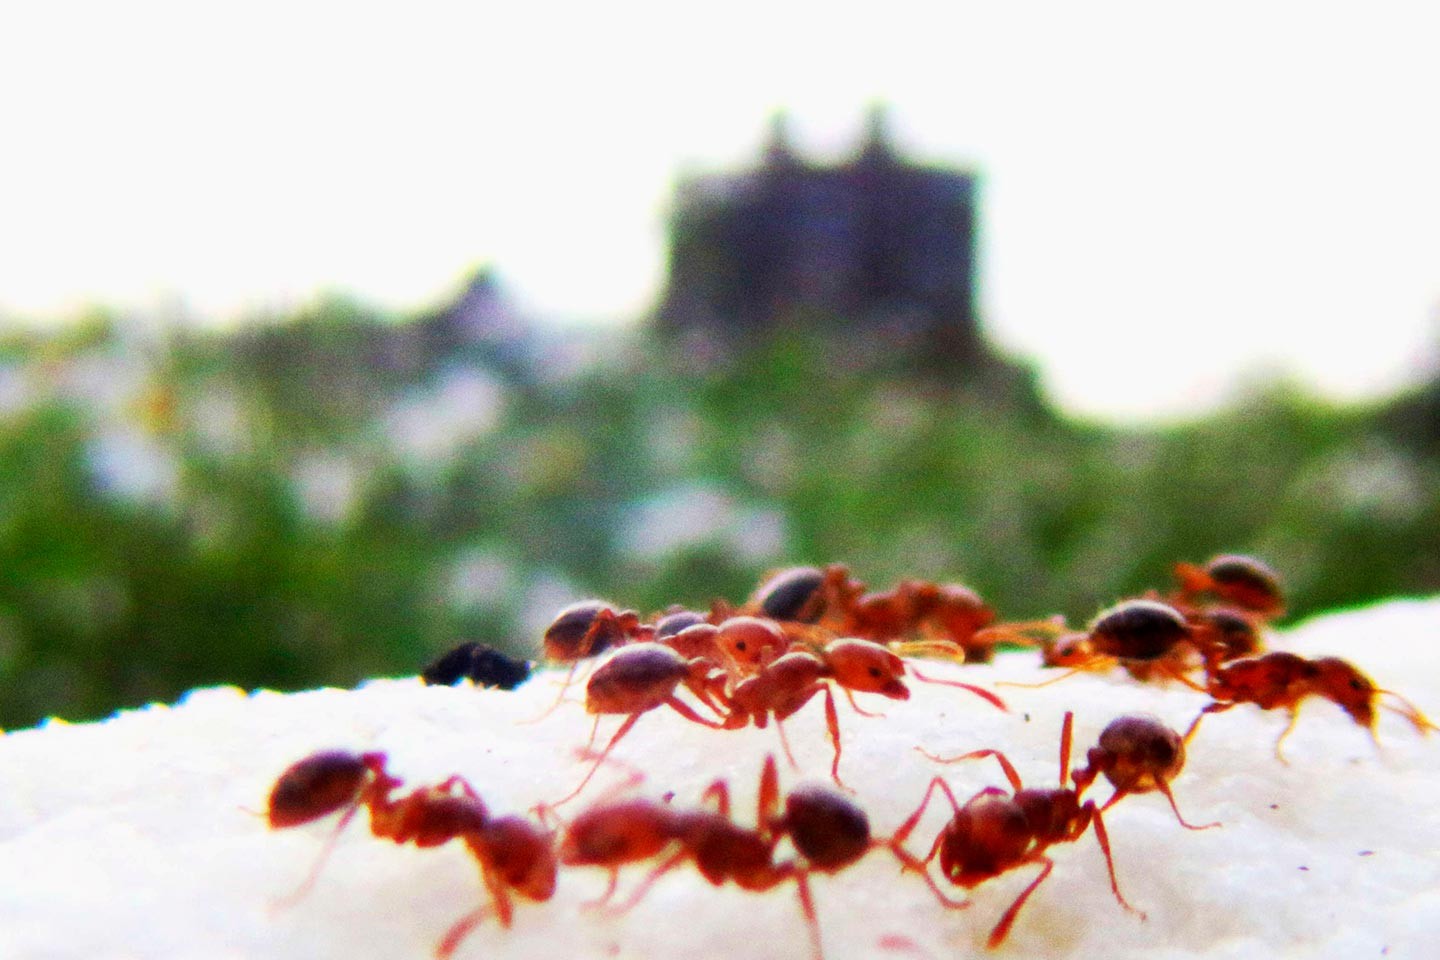 Les fourmis bougent